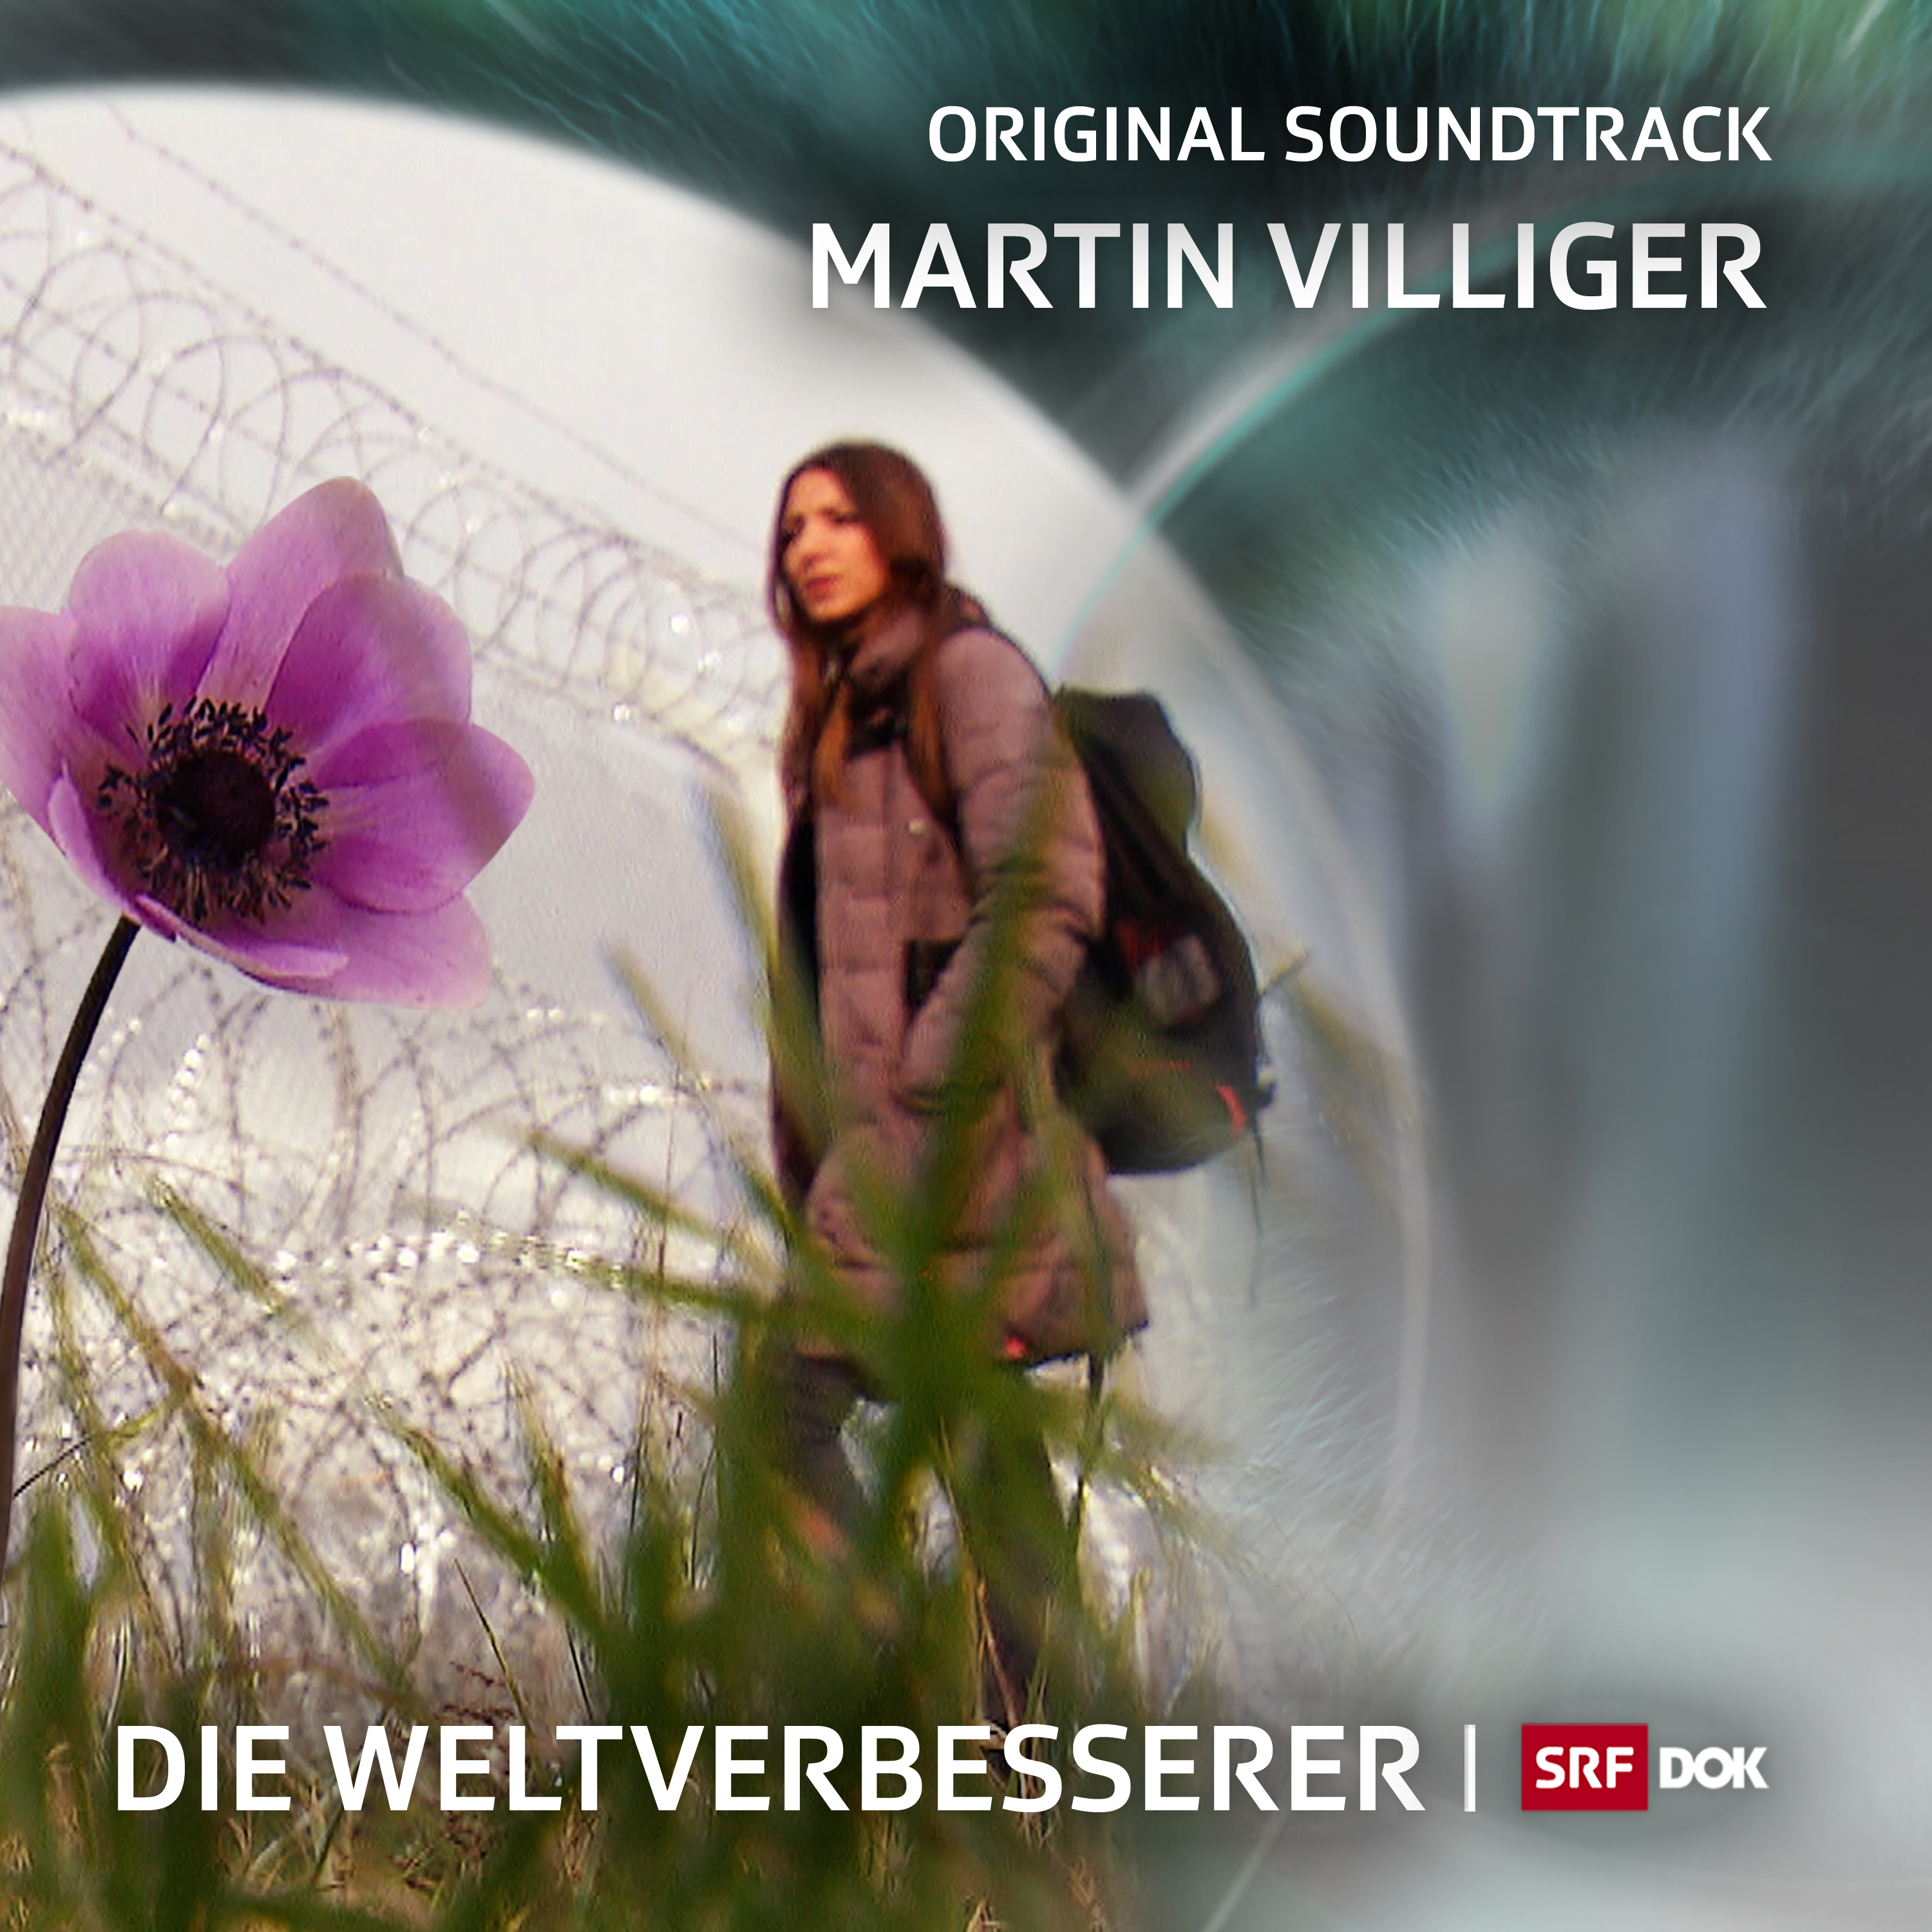 Filmmusik von Martin Villiger